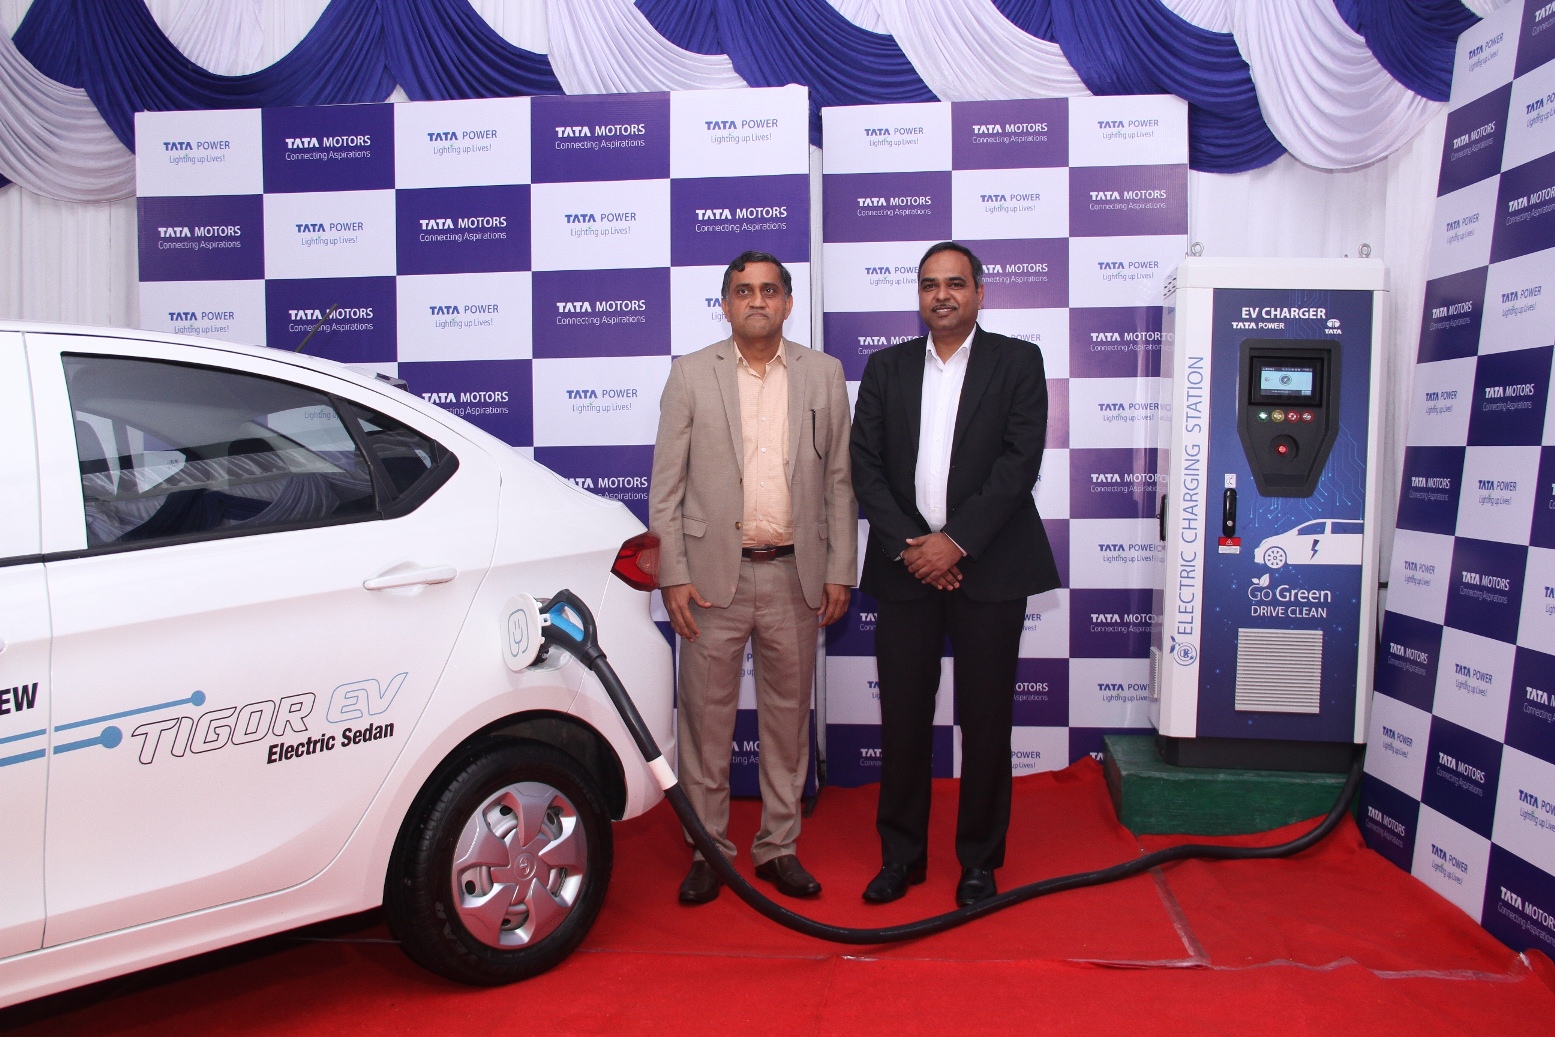 टाटा पॉवर आणि टाटा मोटर्स एकत्र येऊन भारतातील इलेक्ट्रिक दळणवळणाला देणार चालना